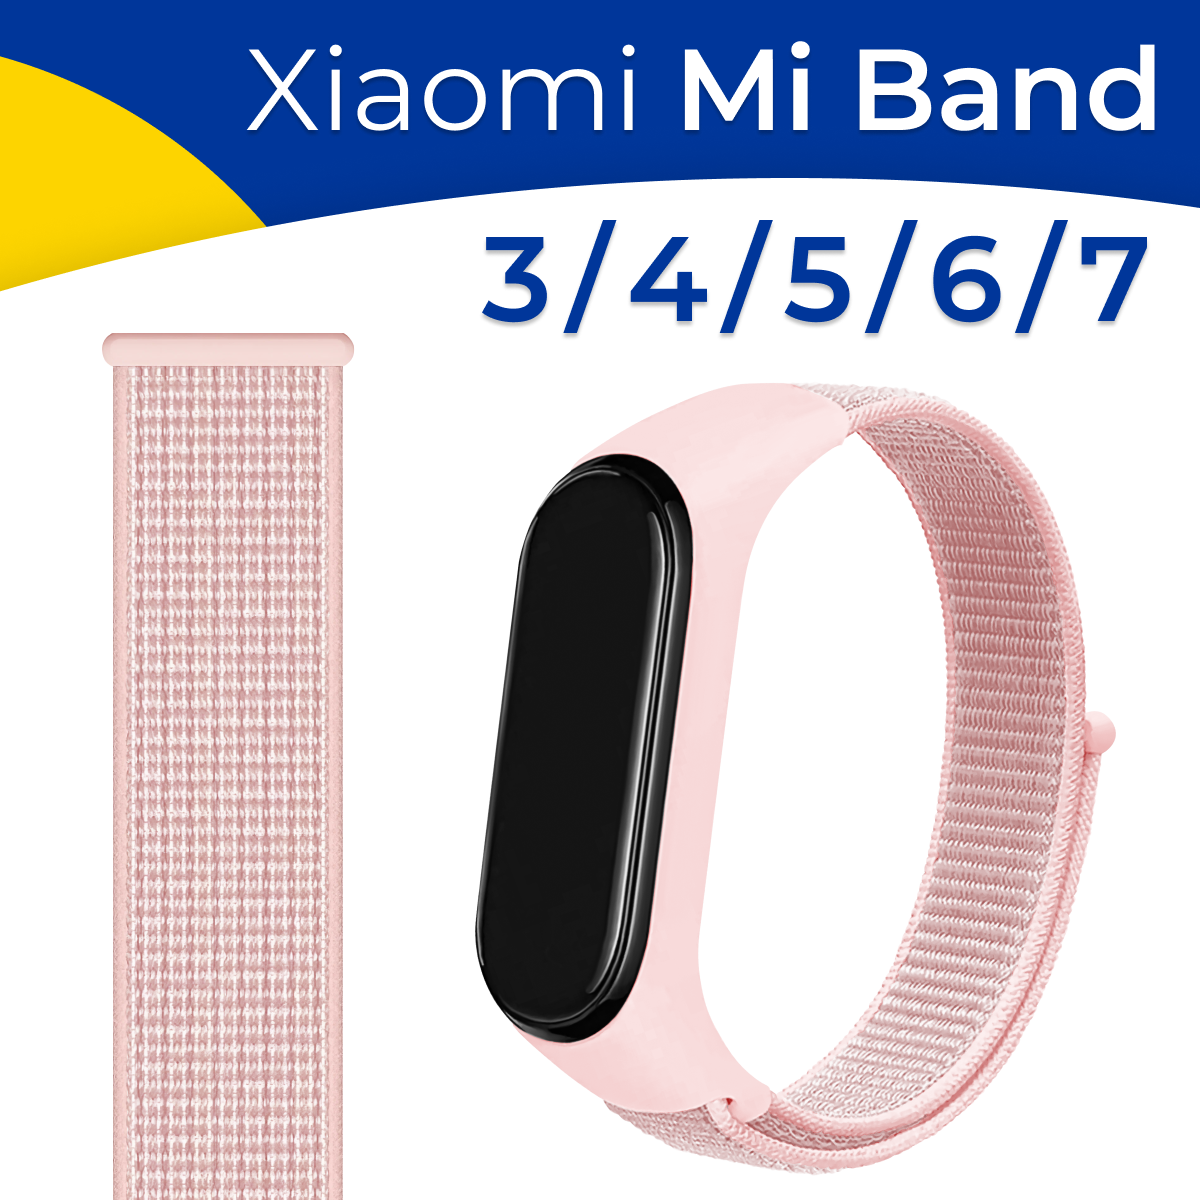 Нейлоновый ремешок для фитнес-трекера Xiaomi Mi Band 3, 4, 5, 6 и 7 / Тканевый браслет для смарт часов Сяоми Ми Бэнд 3, 4, 5, 6 и 7 / Светло-розовый